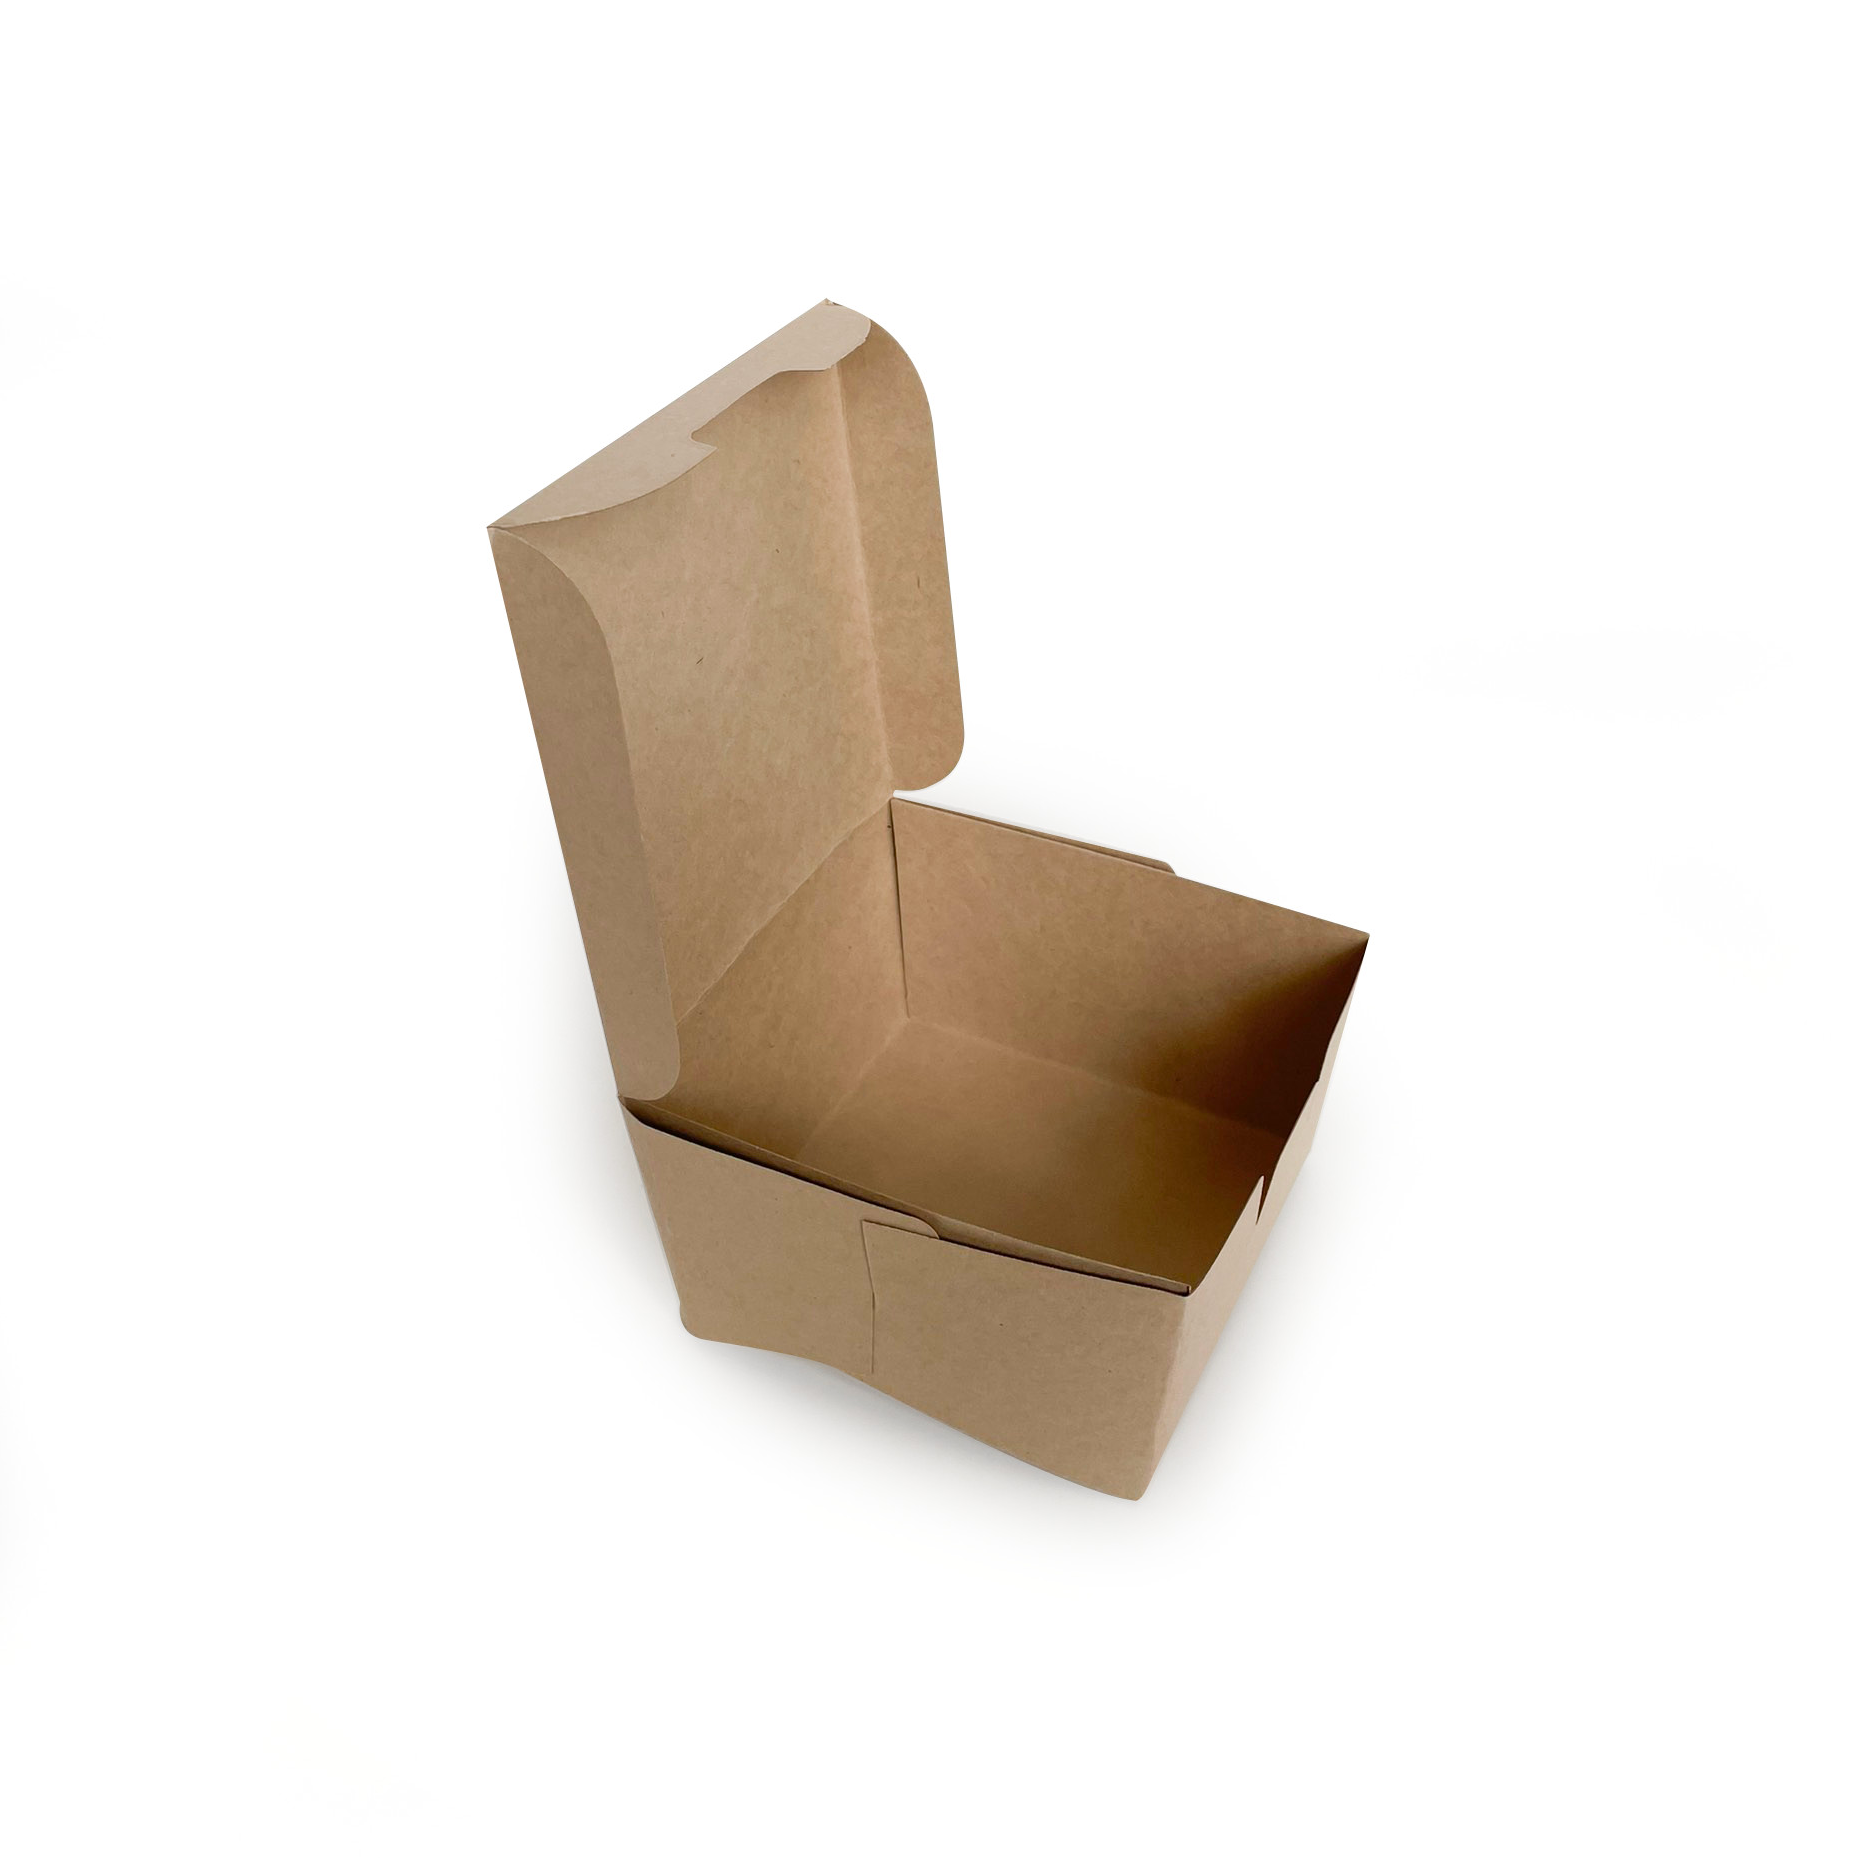 [KV] Hộp giấy đựng hamburger - Gói 50 hộp giấy trơn